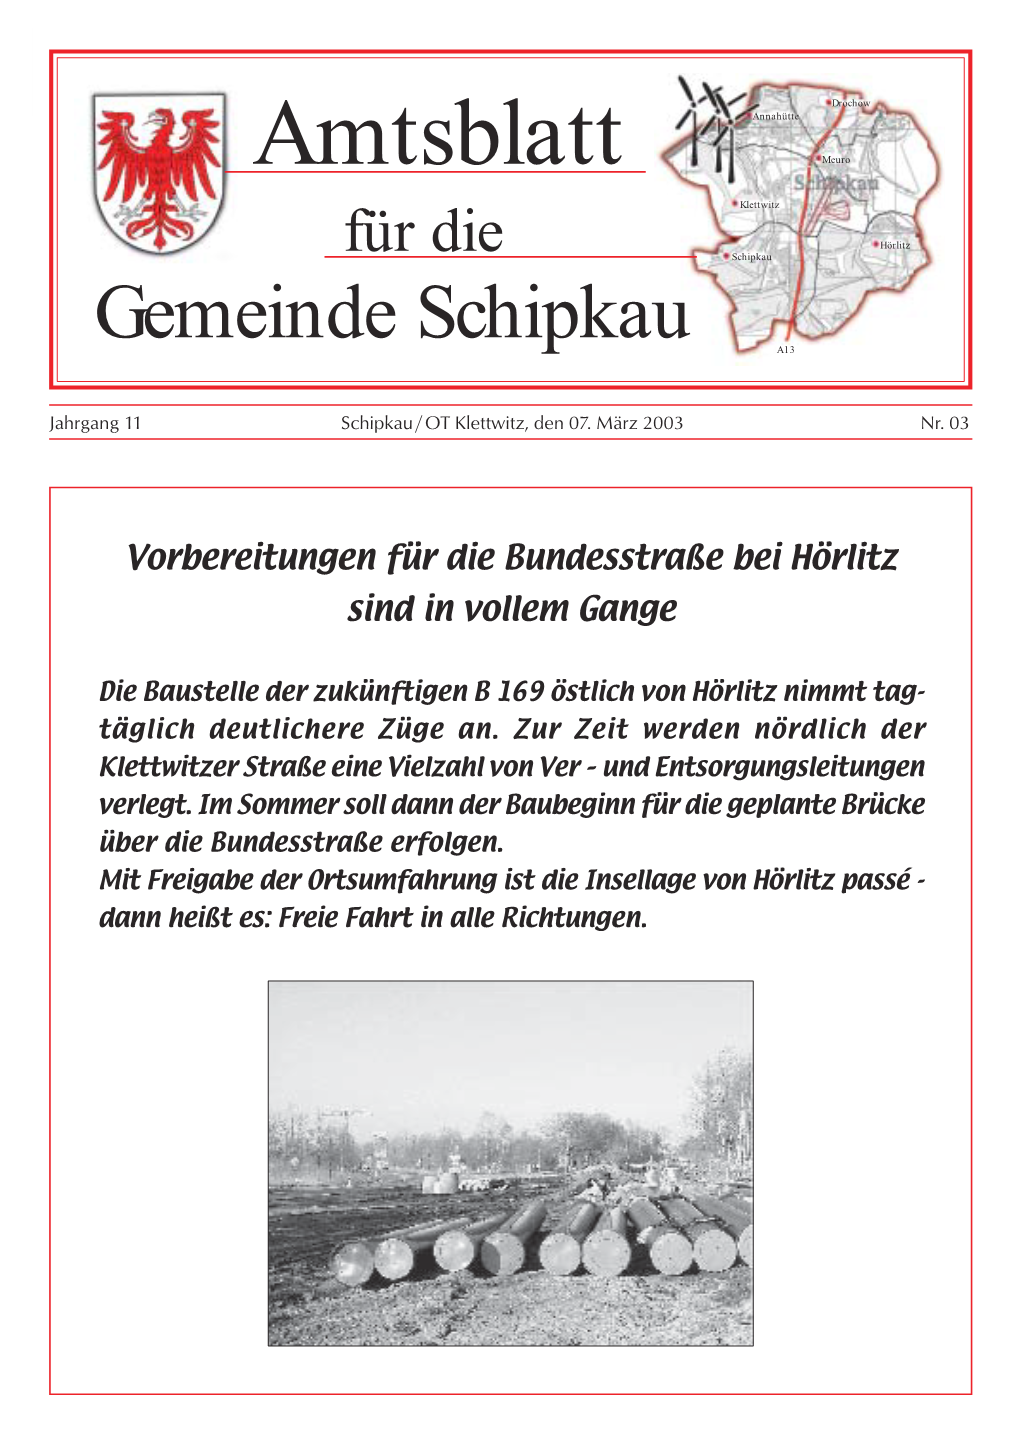 Amtsblatt Für Die Gemeinde Schipkau 03/03 1